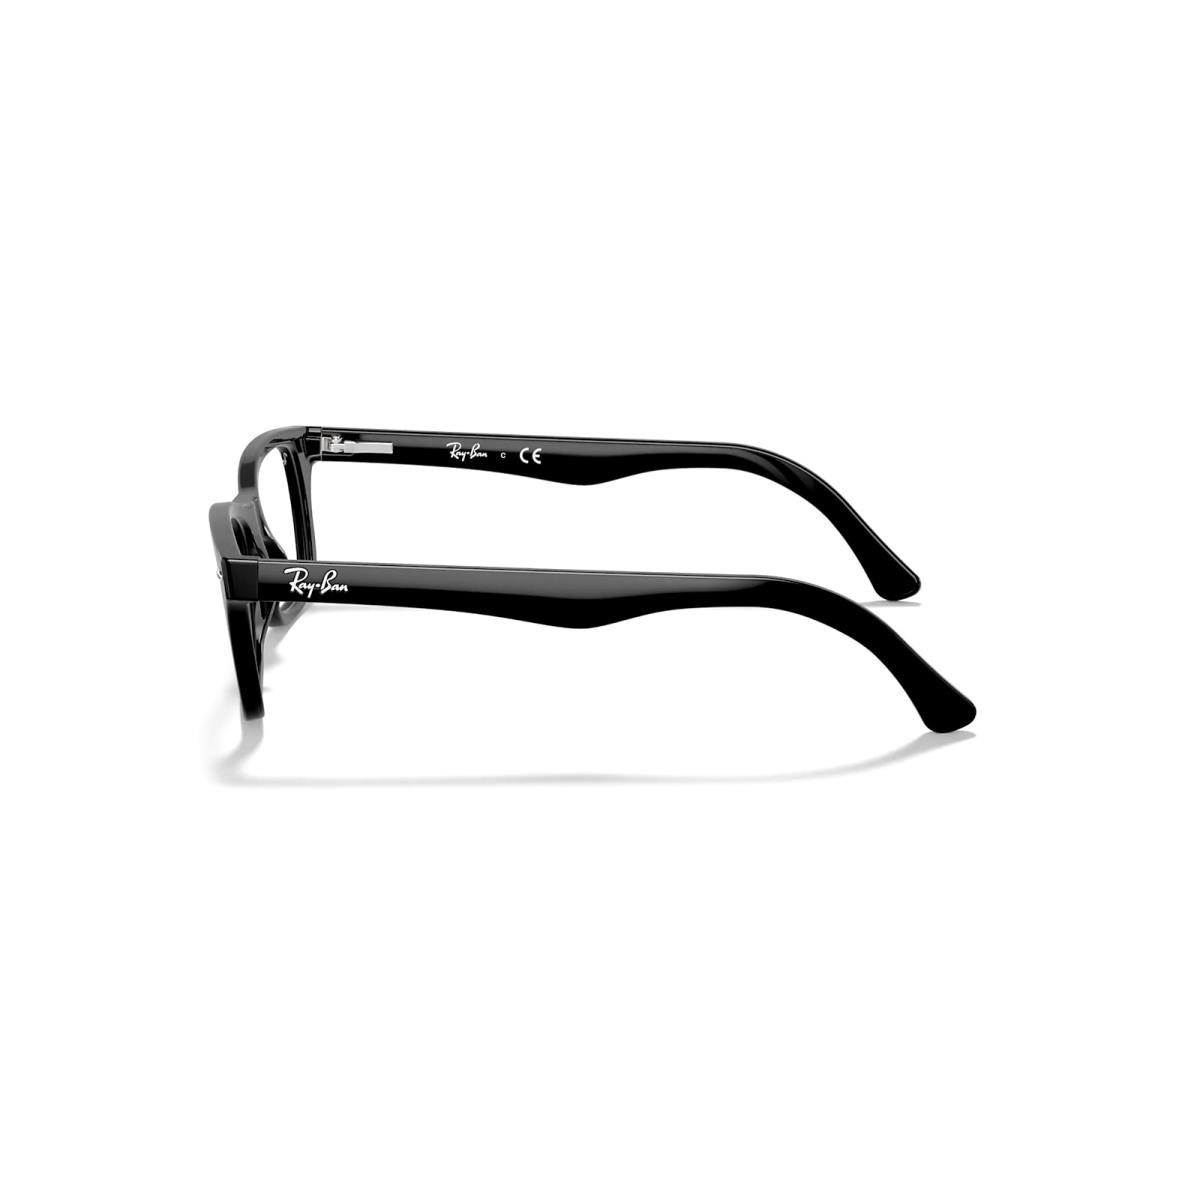 Ray-ban RB5228-2000 Unisex Polished Black Optical Eyeglasses